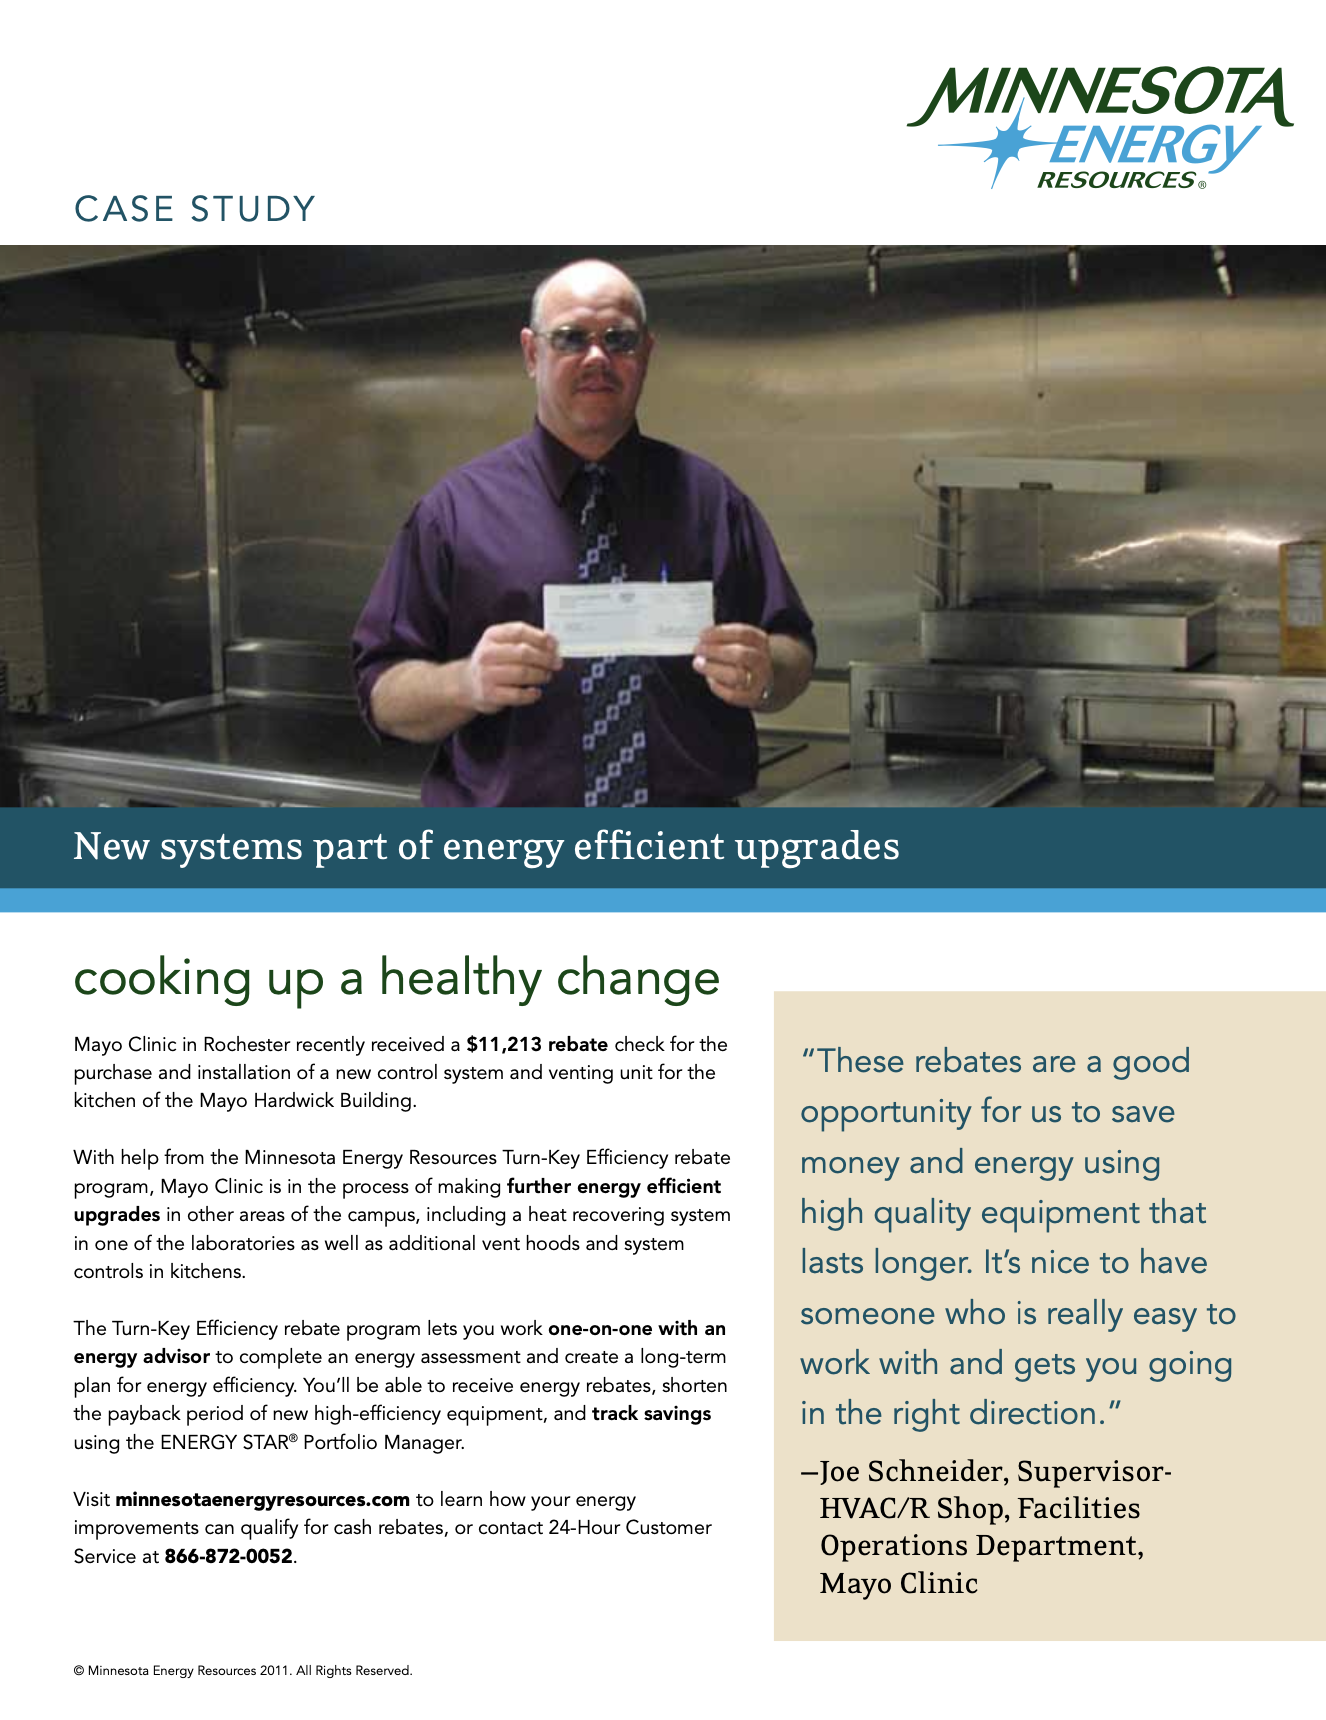 Mayo Clinic Energy Efficiency Rebate